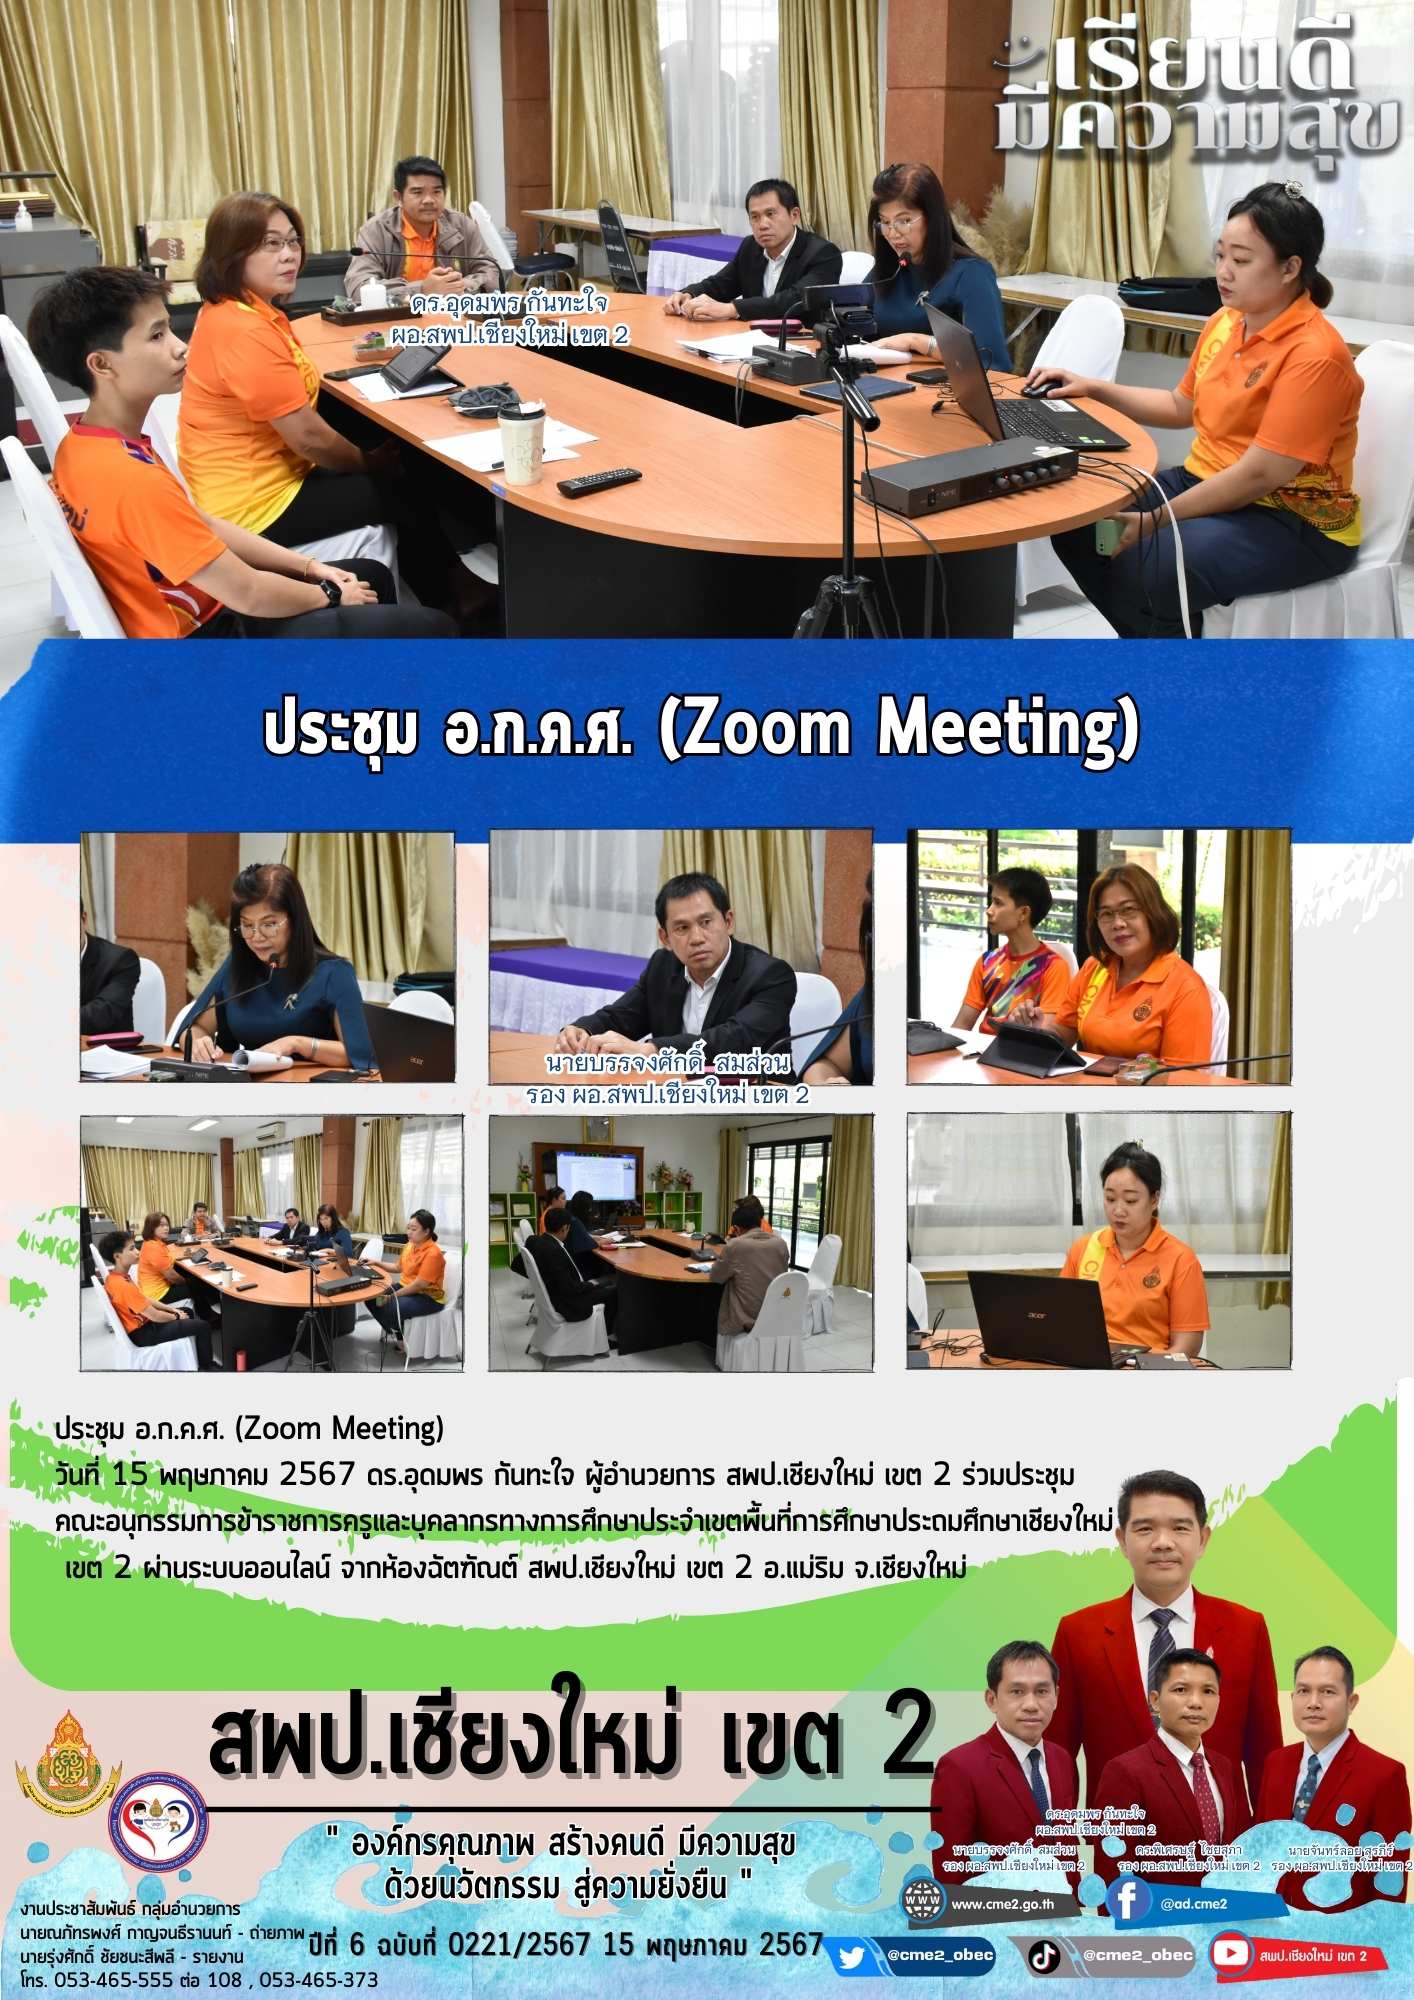 ประชุม อ.ก.ค.ศ. (Zoom Meeting)